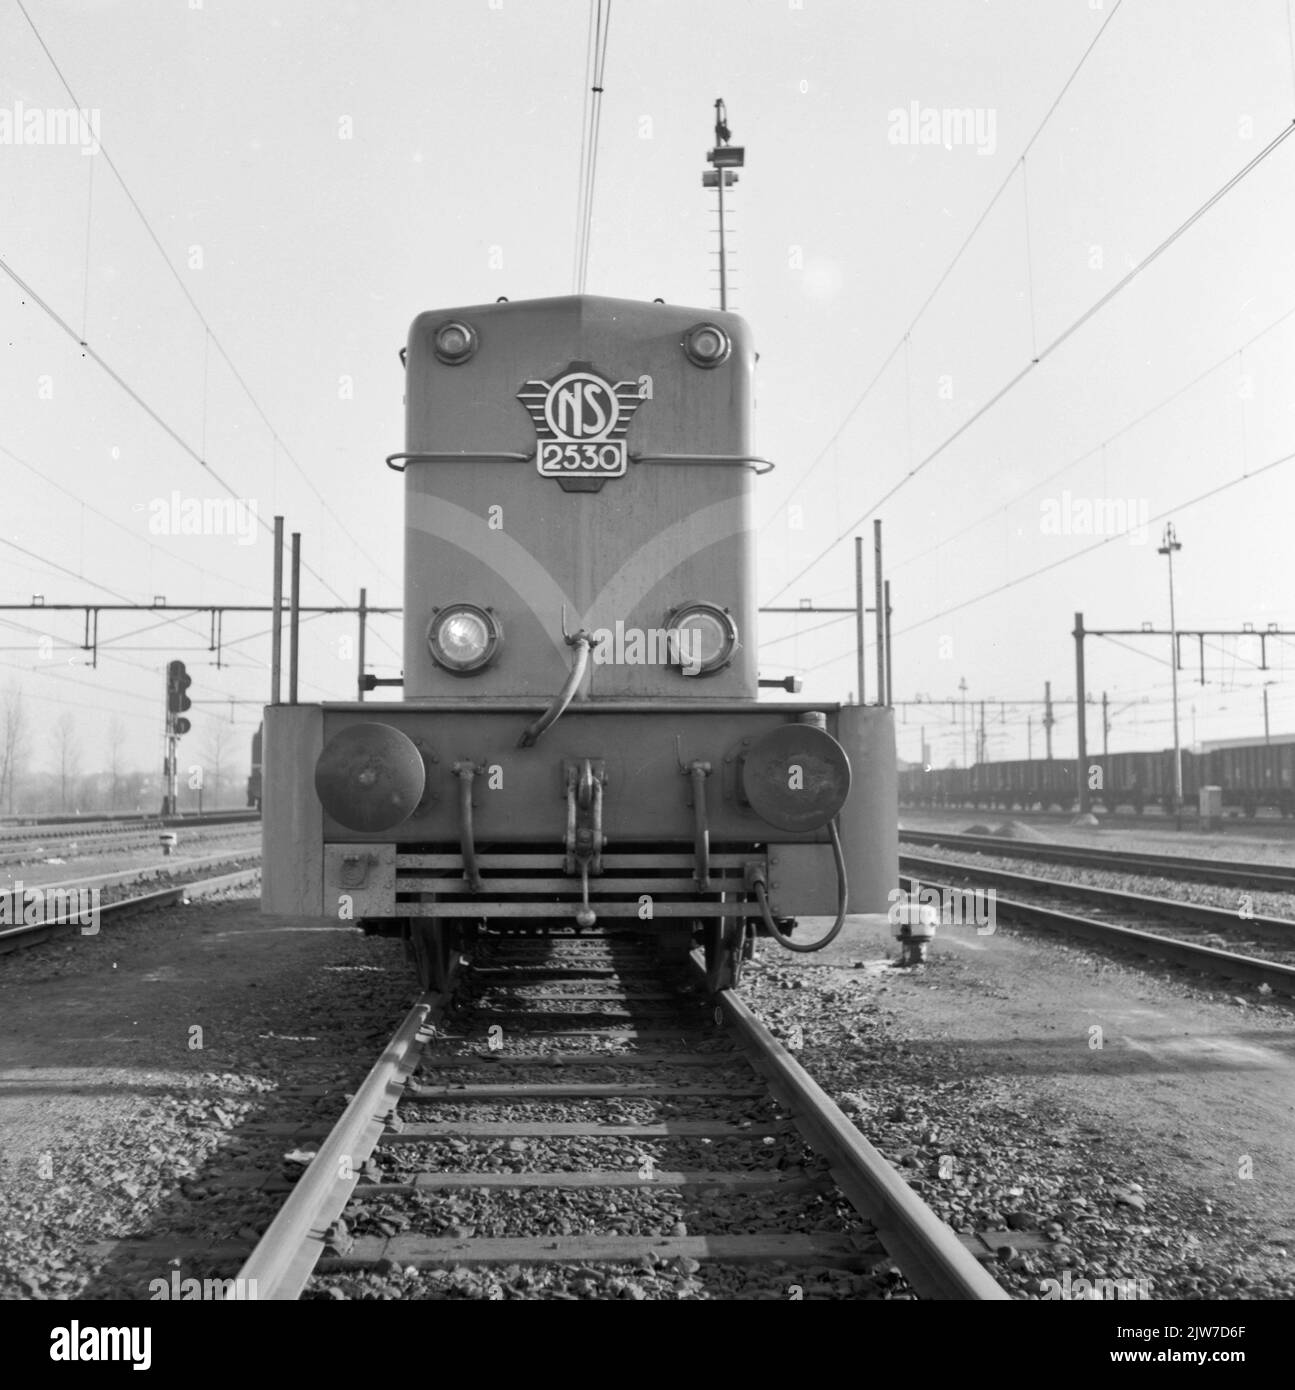 Bild der Diesel-Elektro-Lokomotive Nr. 2530 (Serie 2400/2500) der N.S. in Eindhoven. Stockfoto